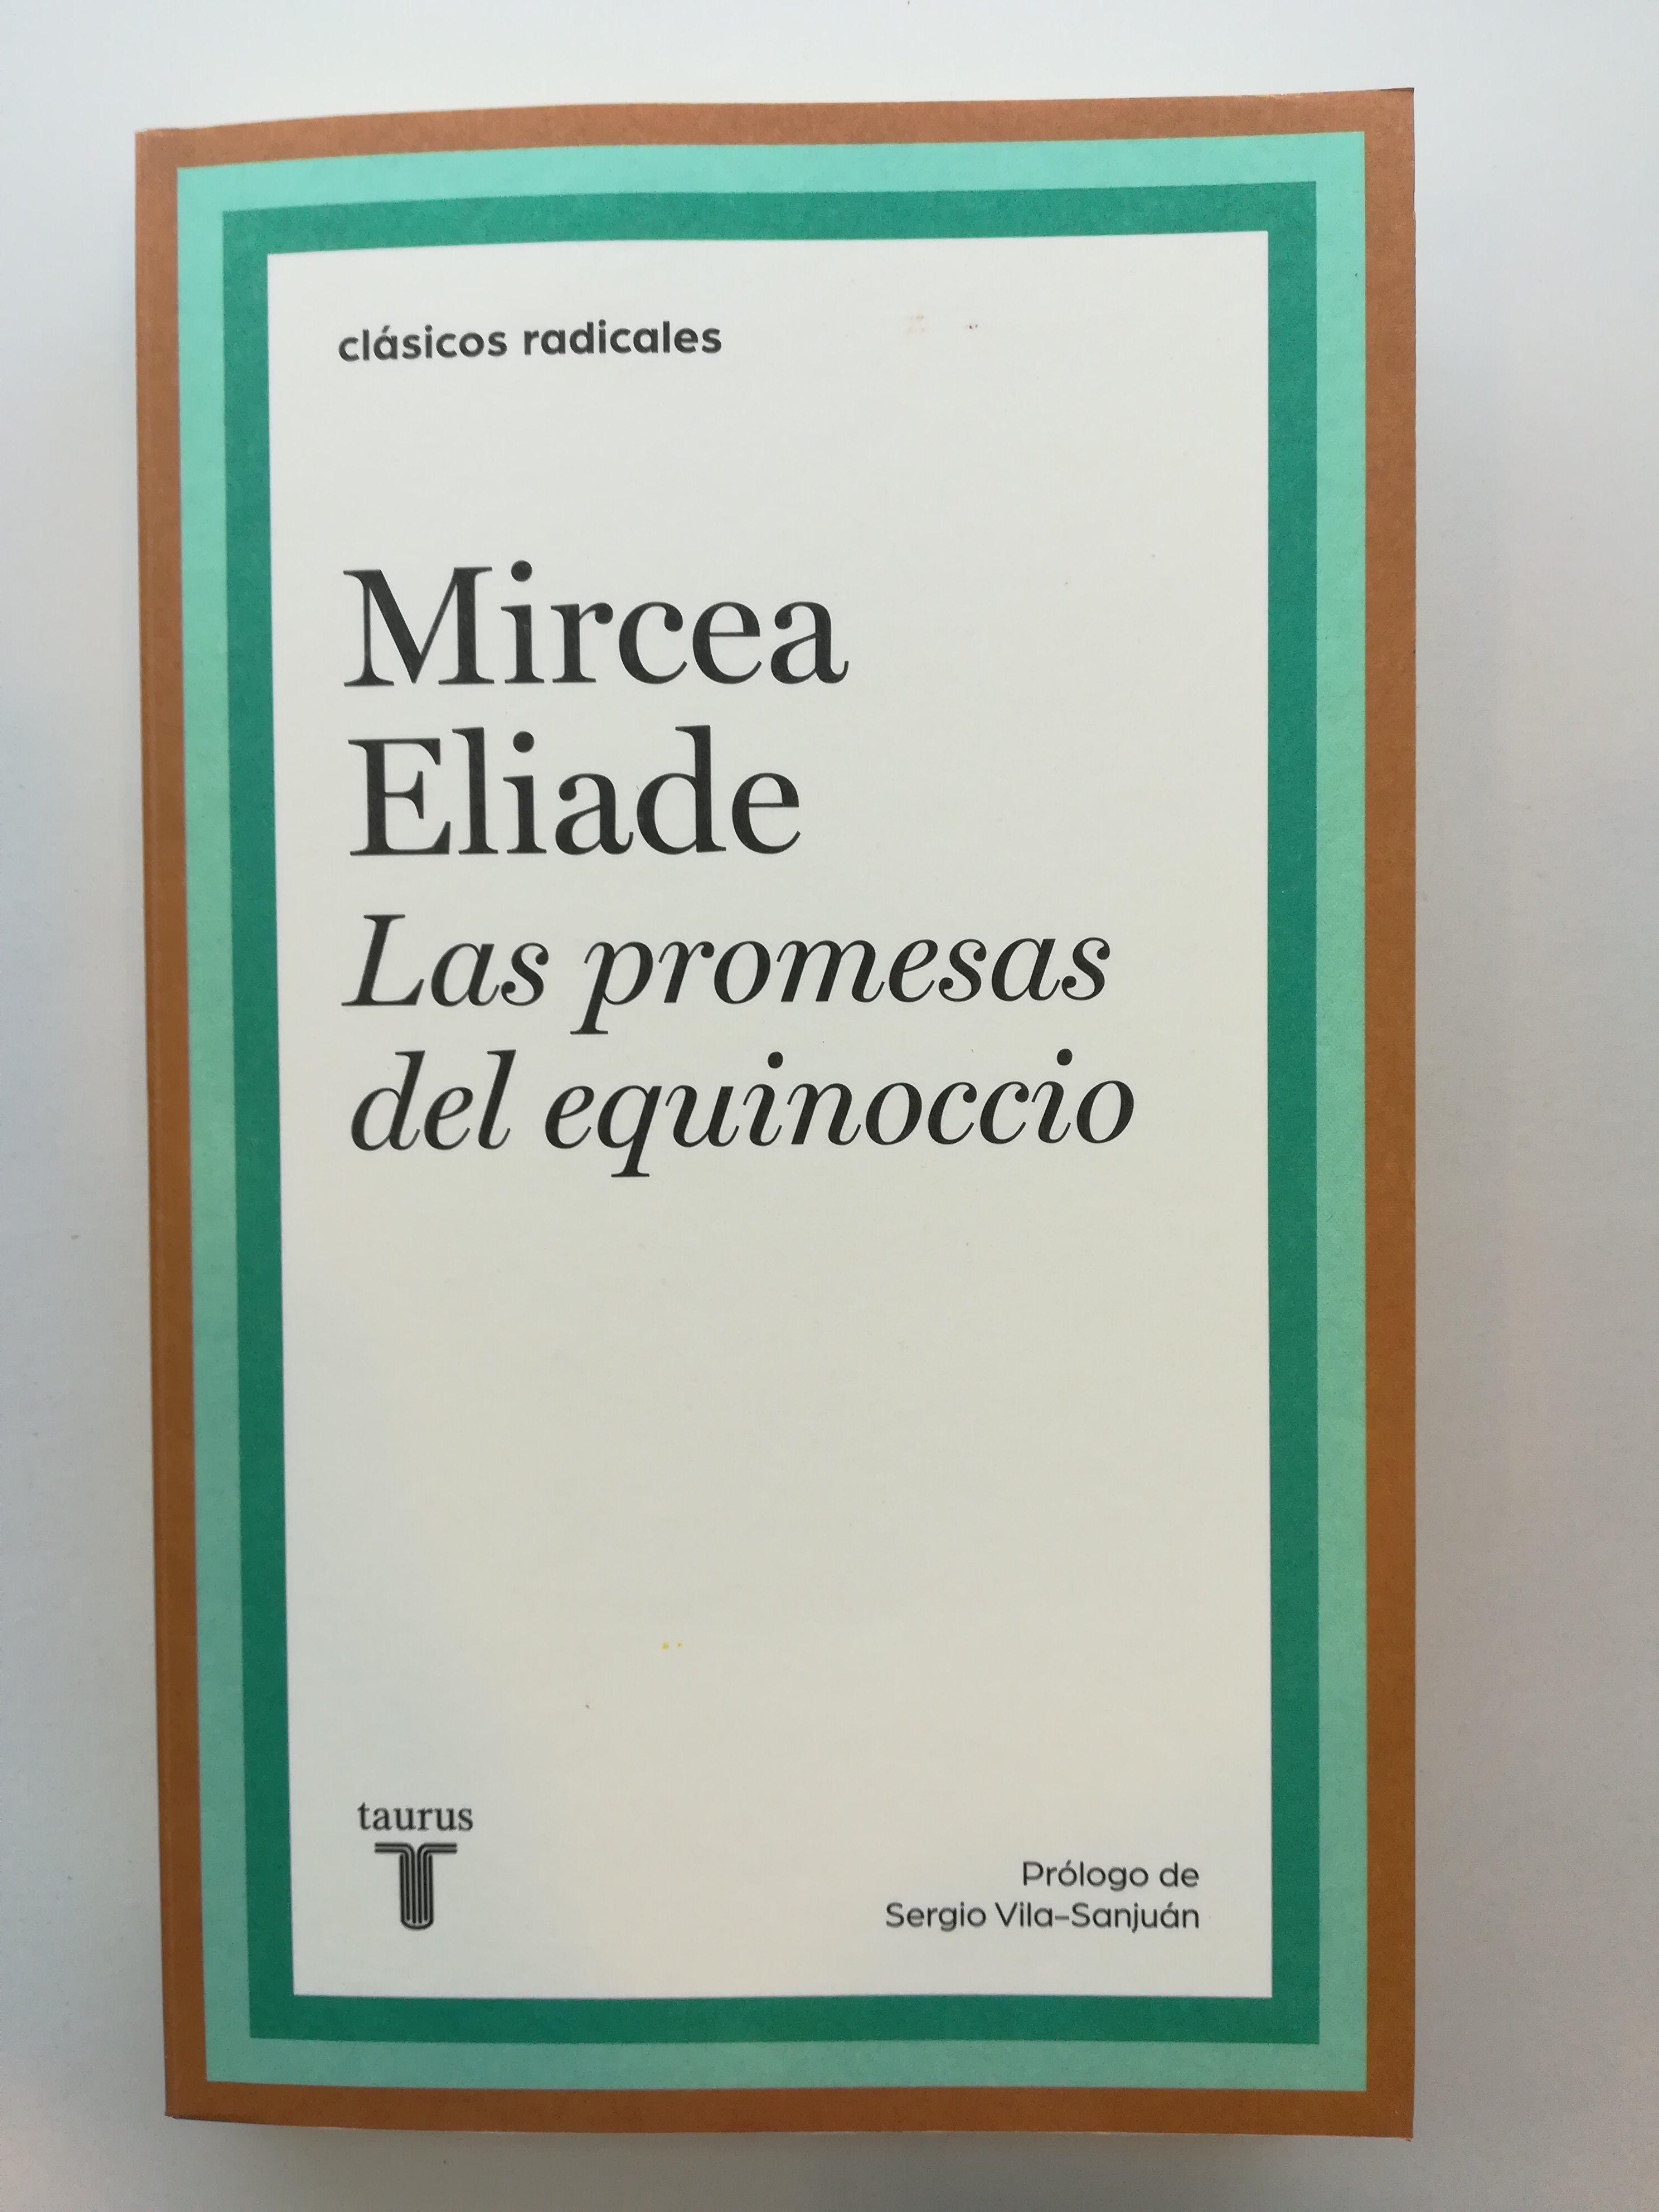 Mircea Eliade: pasión entre símbolos